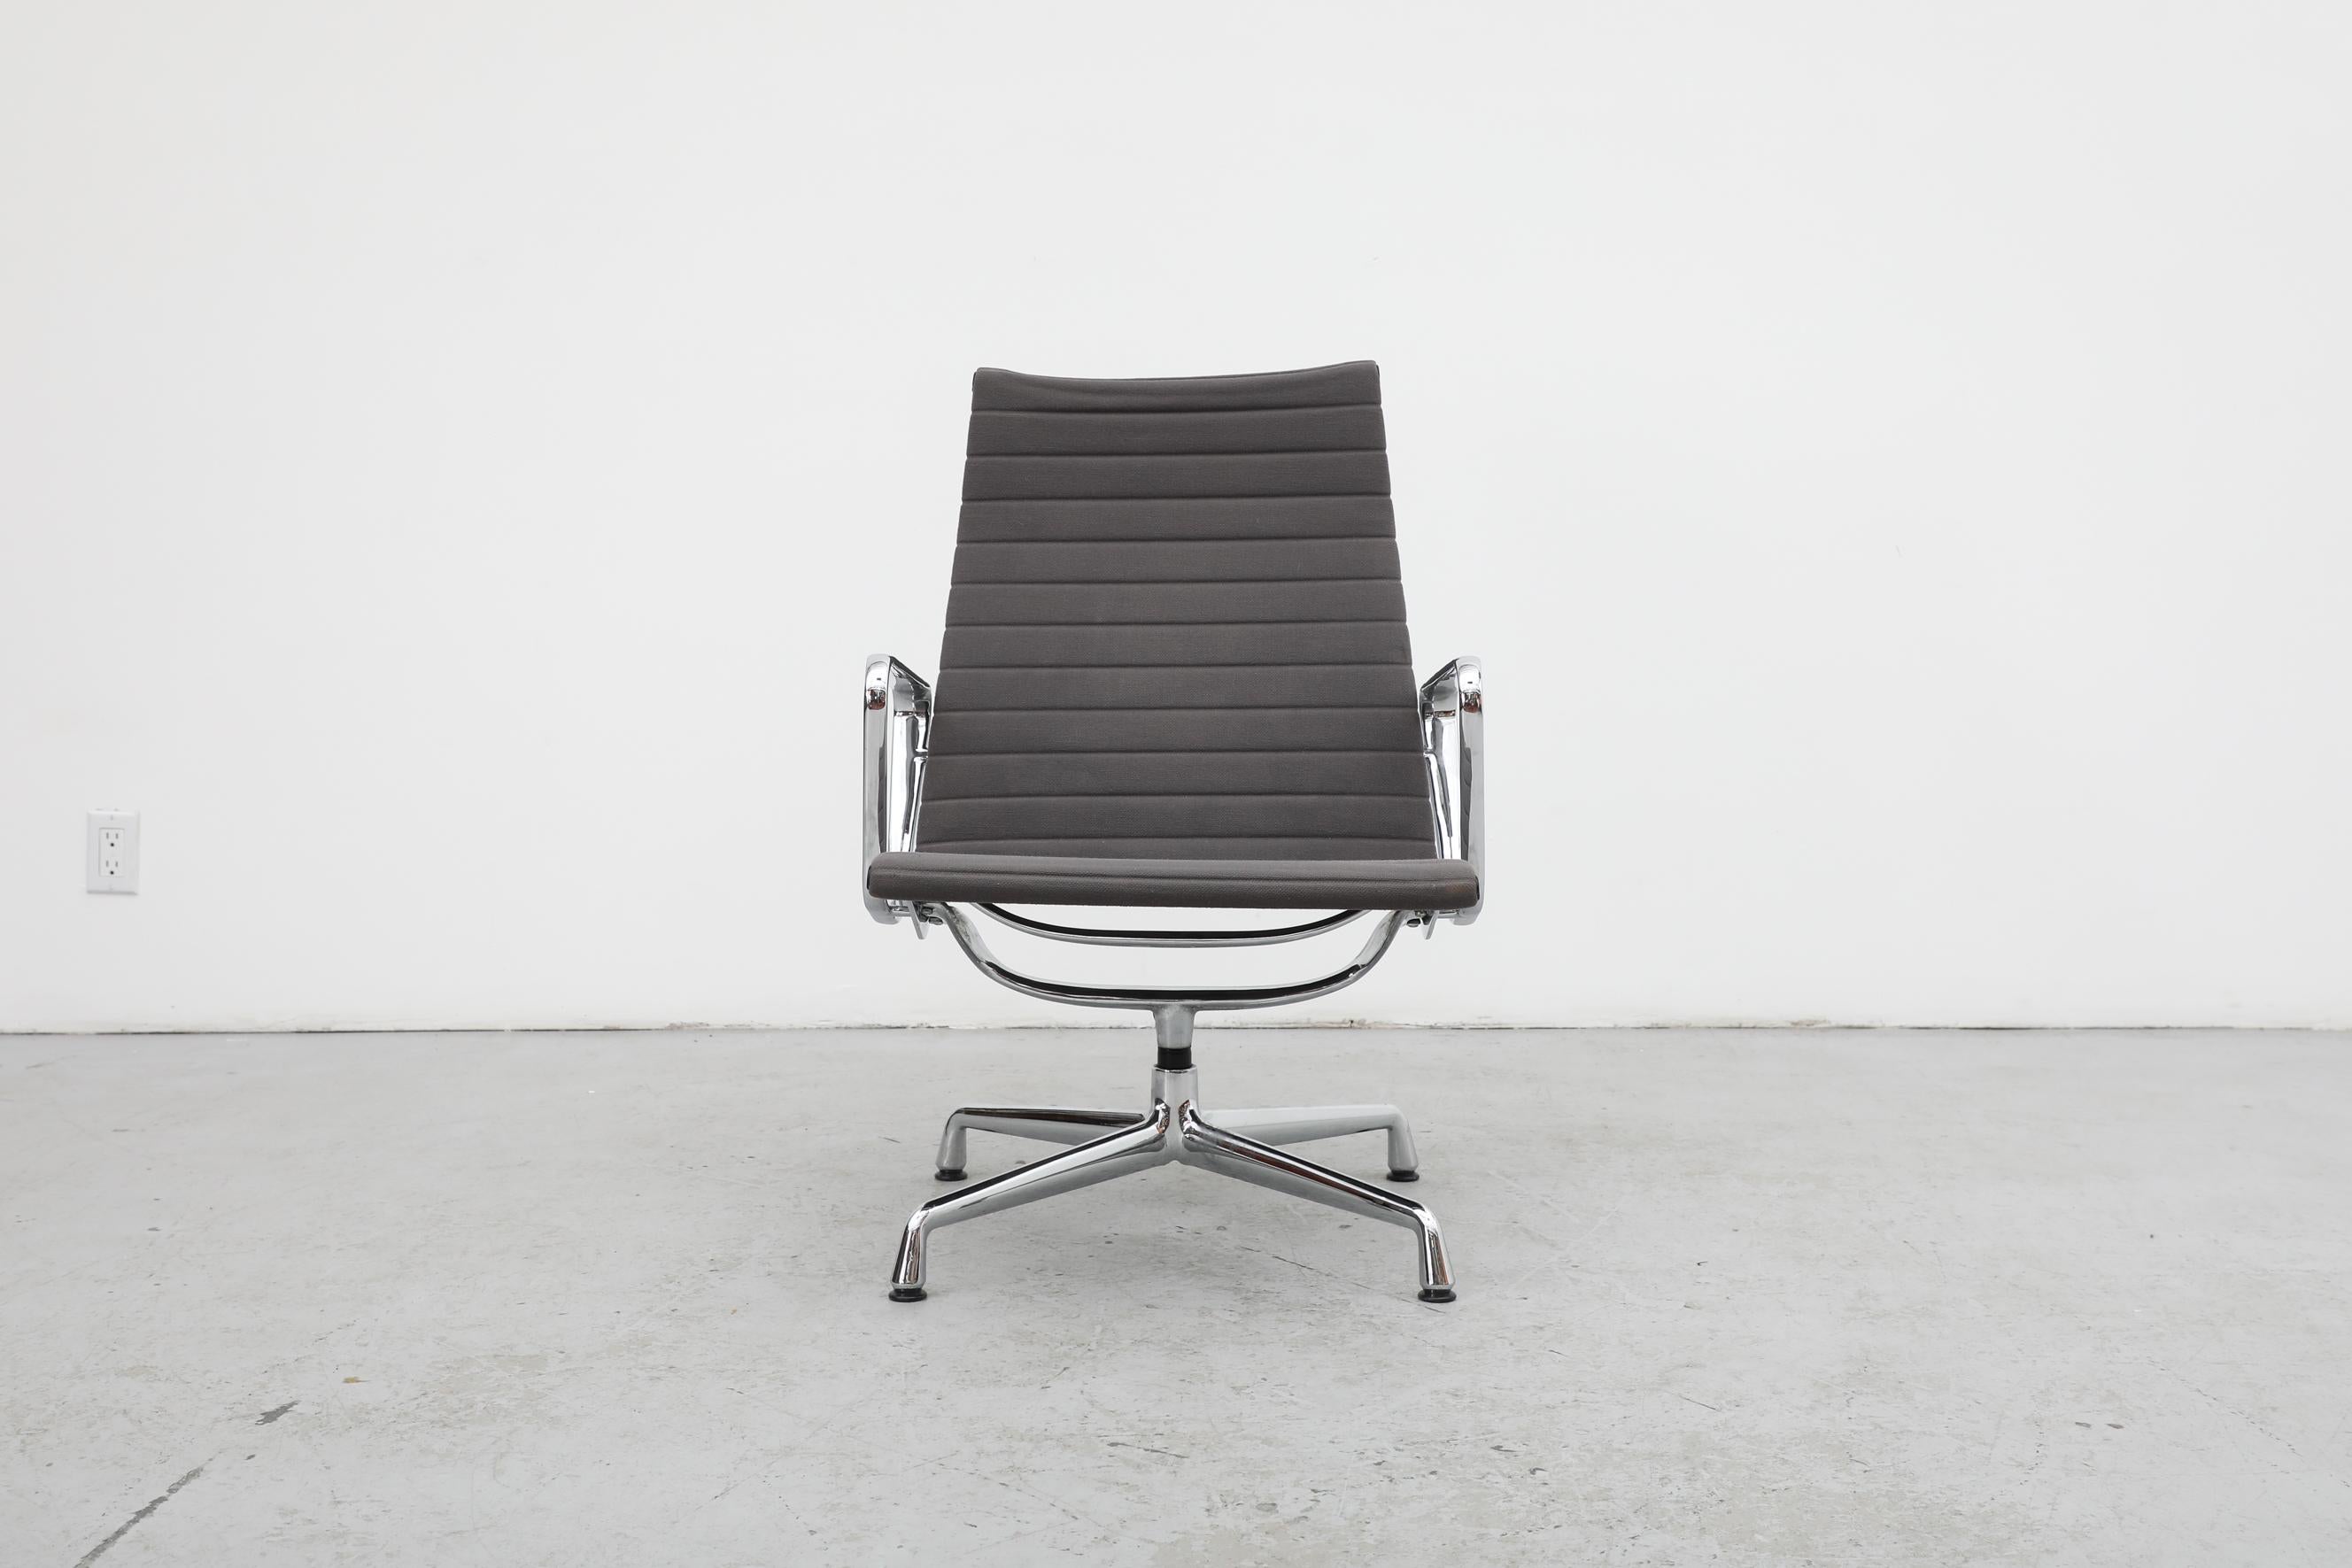 La chaise EA 116 Aluminium Easy Chair est une icône du 20e siècle et un point culminant de l'œuvre que le duo de designers Charles & Ray Eames a laissée au monde. Elle a été conçue en 1958 à la demande d'un ami du couple, le designer et architecte